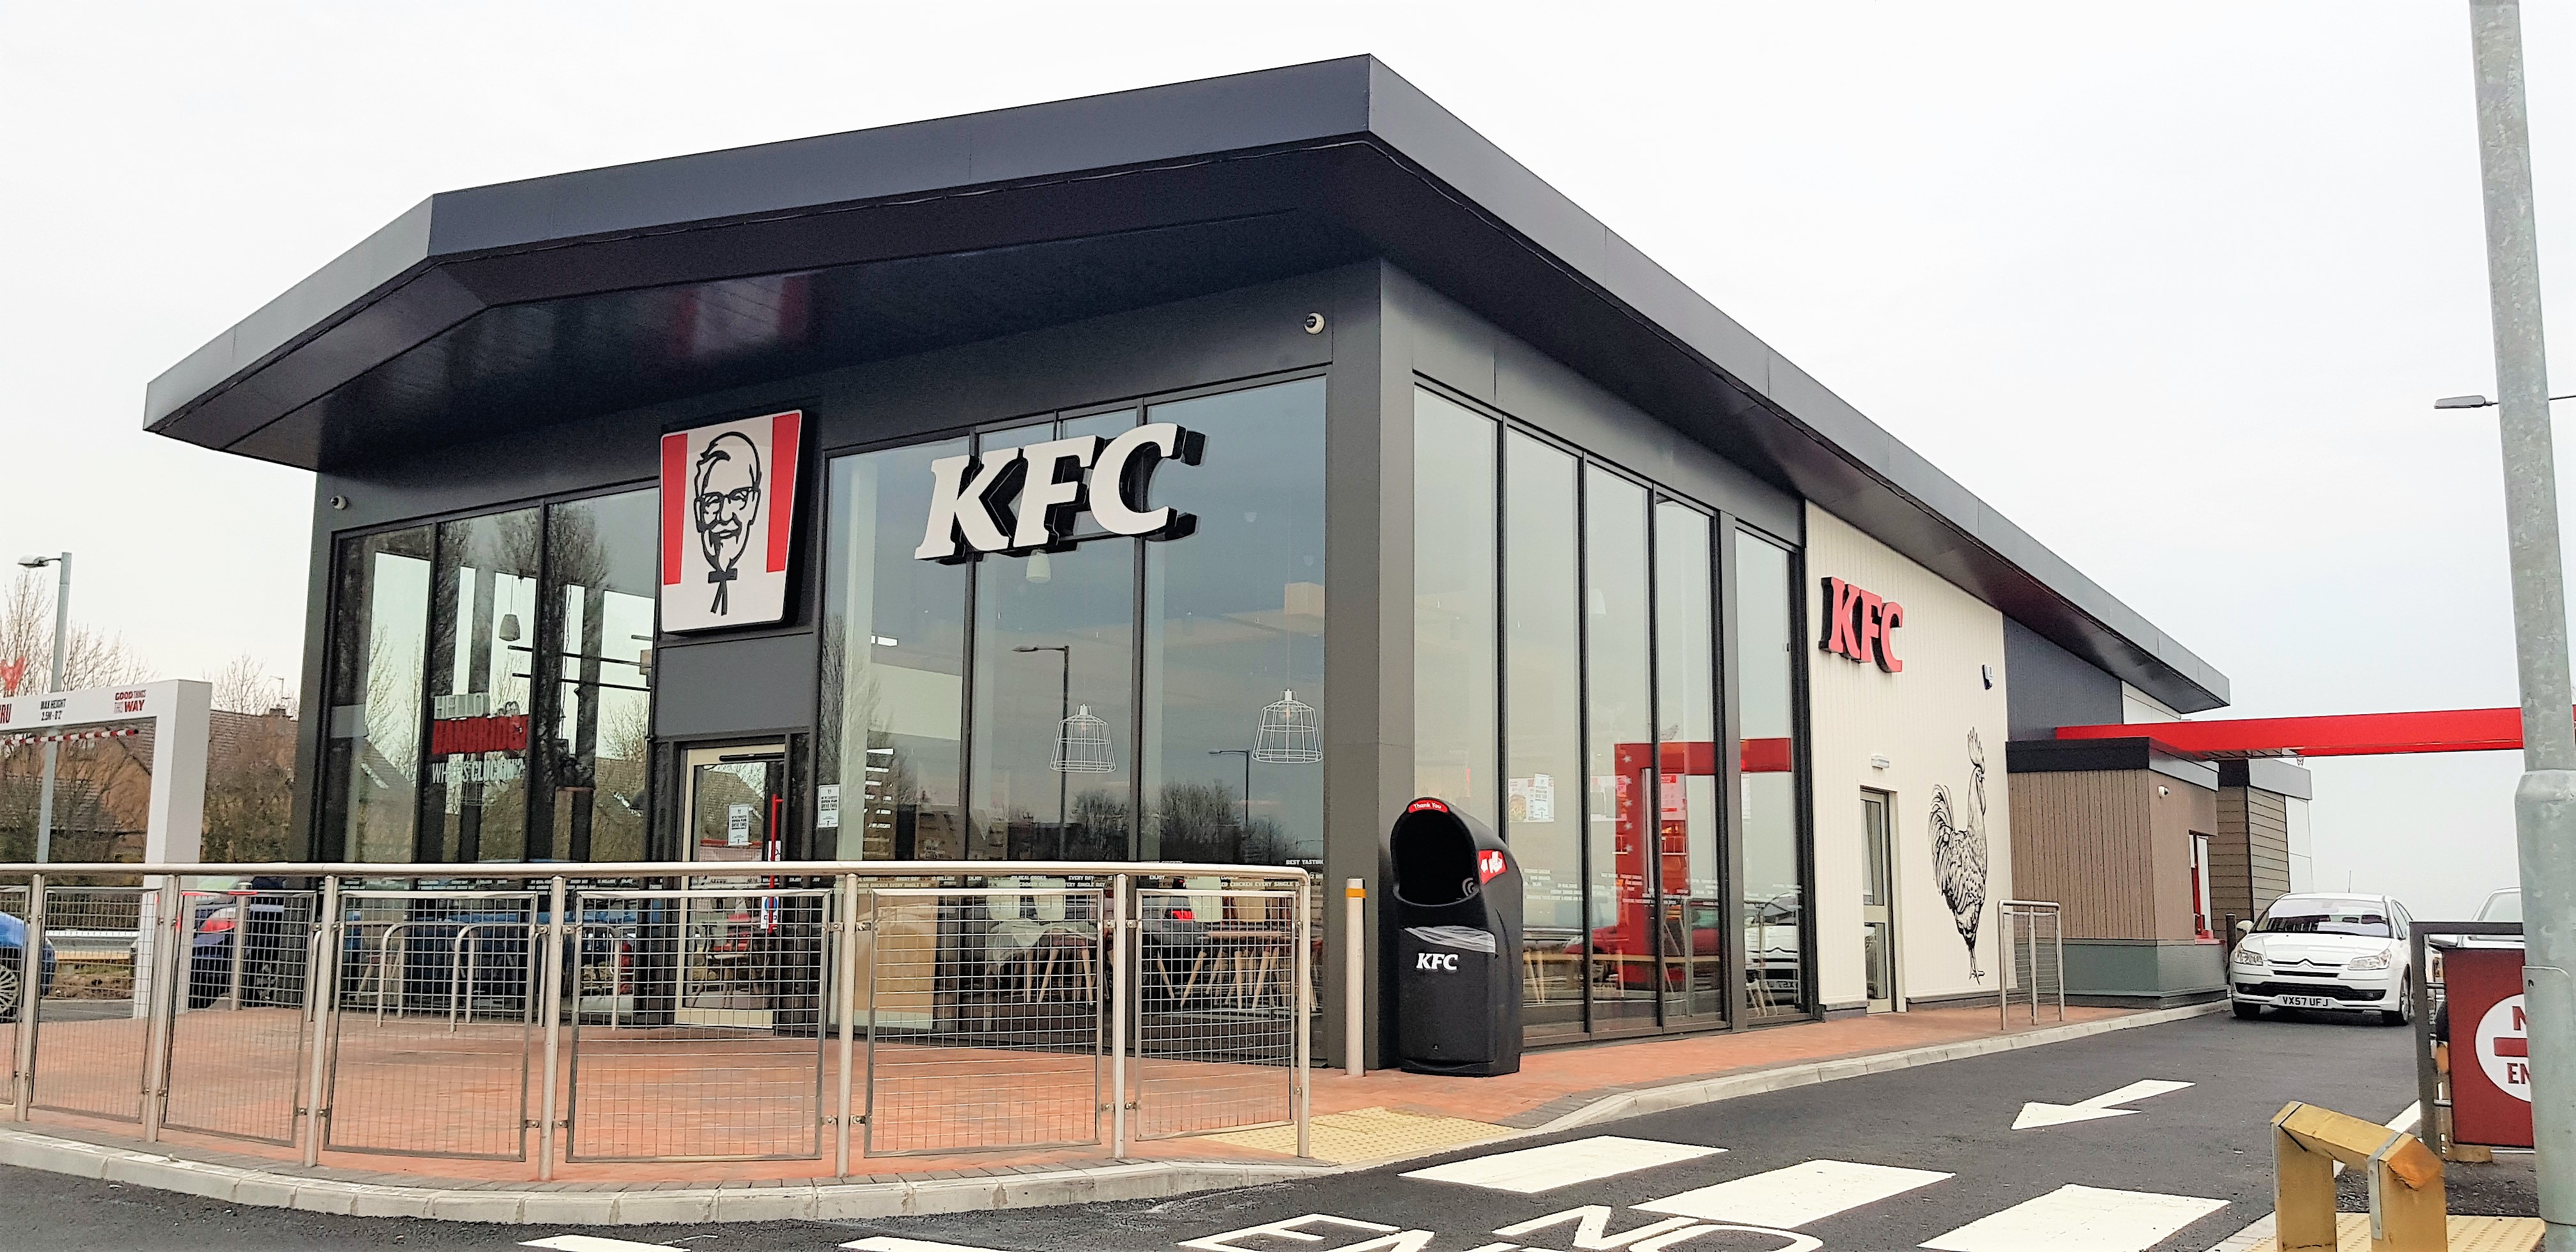 KFC Banbridge